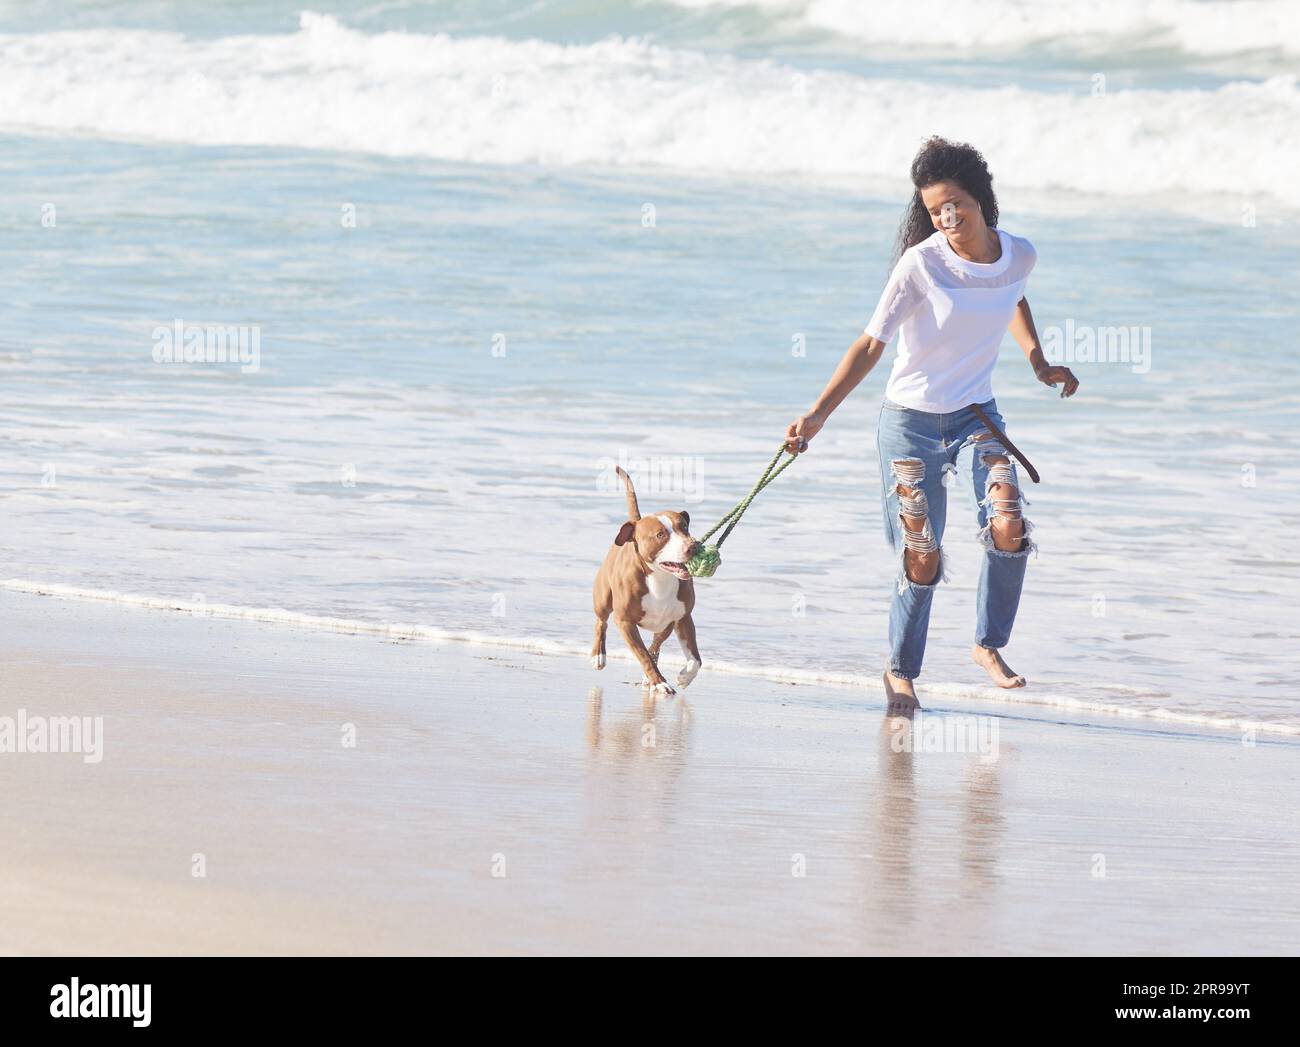 Lo mejor de la vida es peludo, una mujer jugando con su pit bull en la playa. Foto de stock